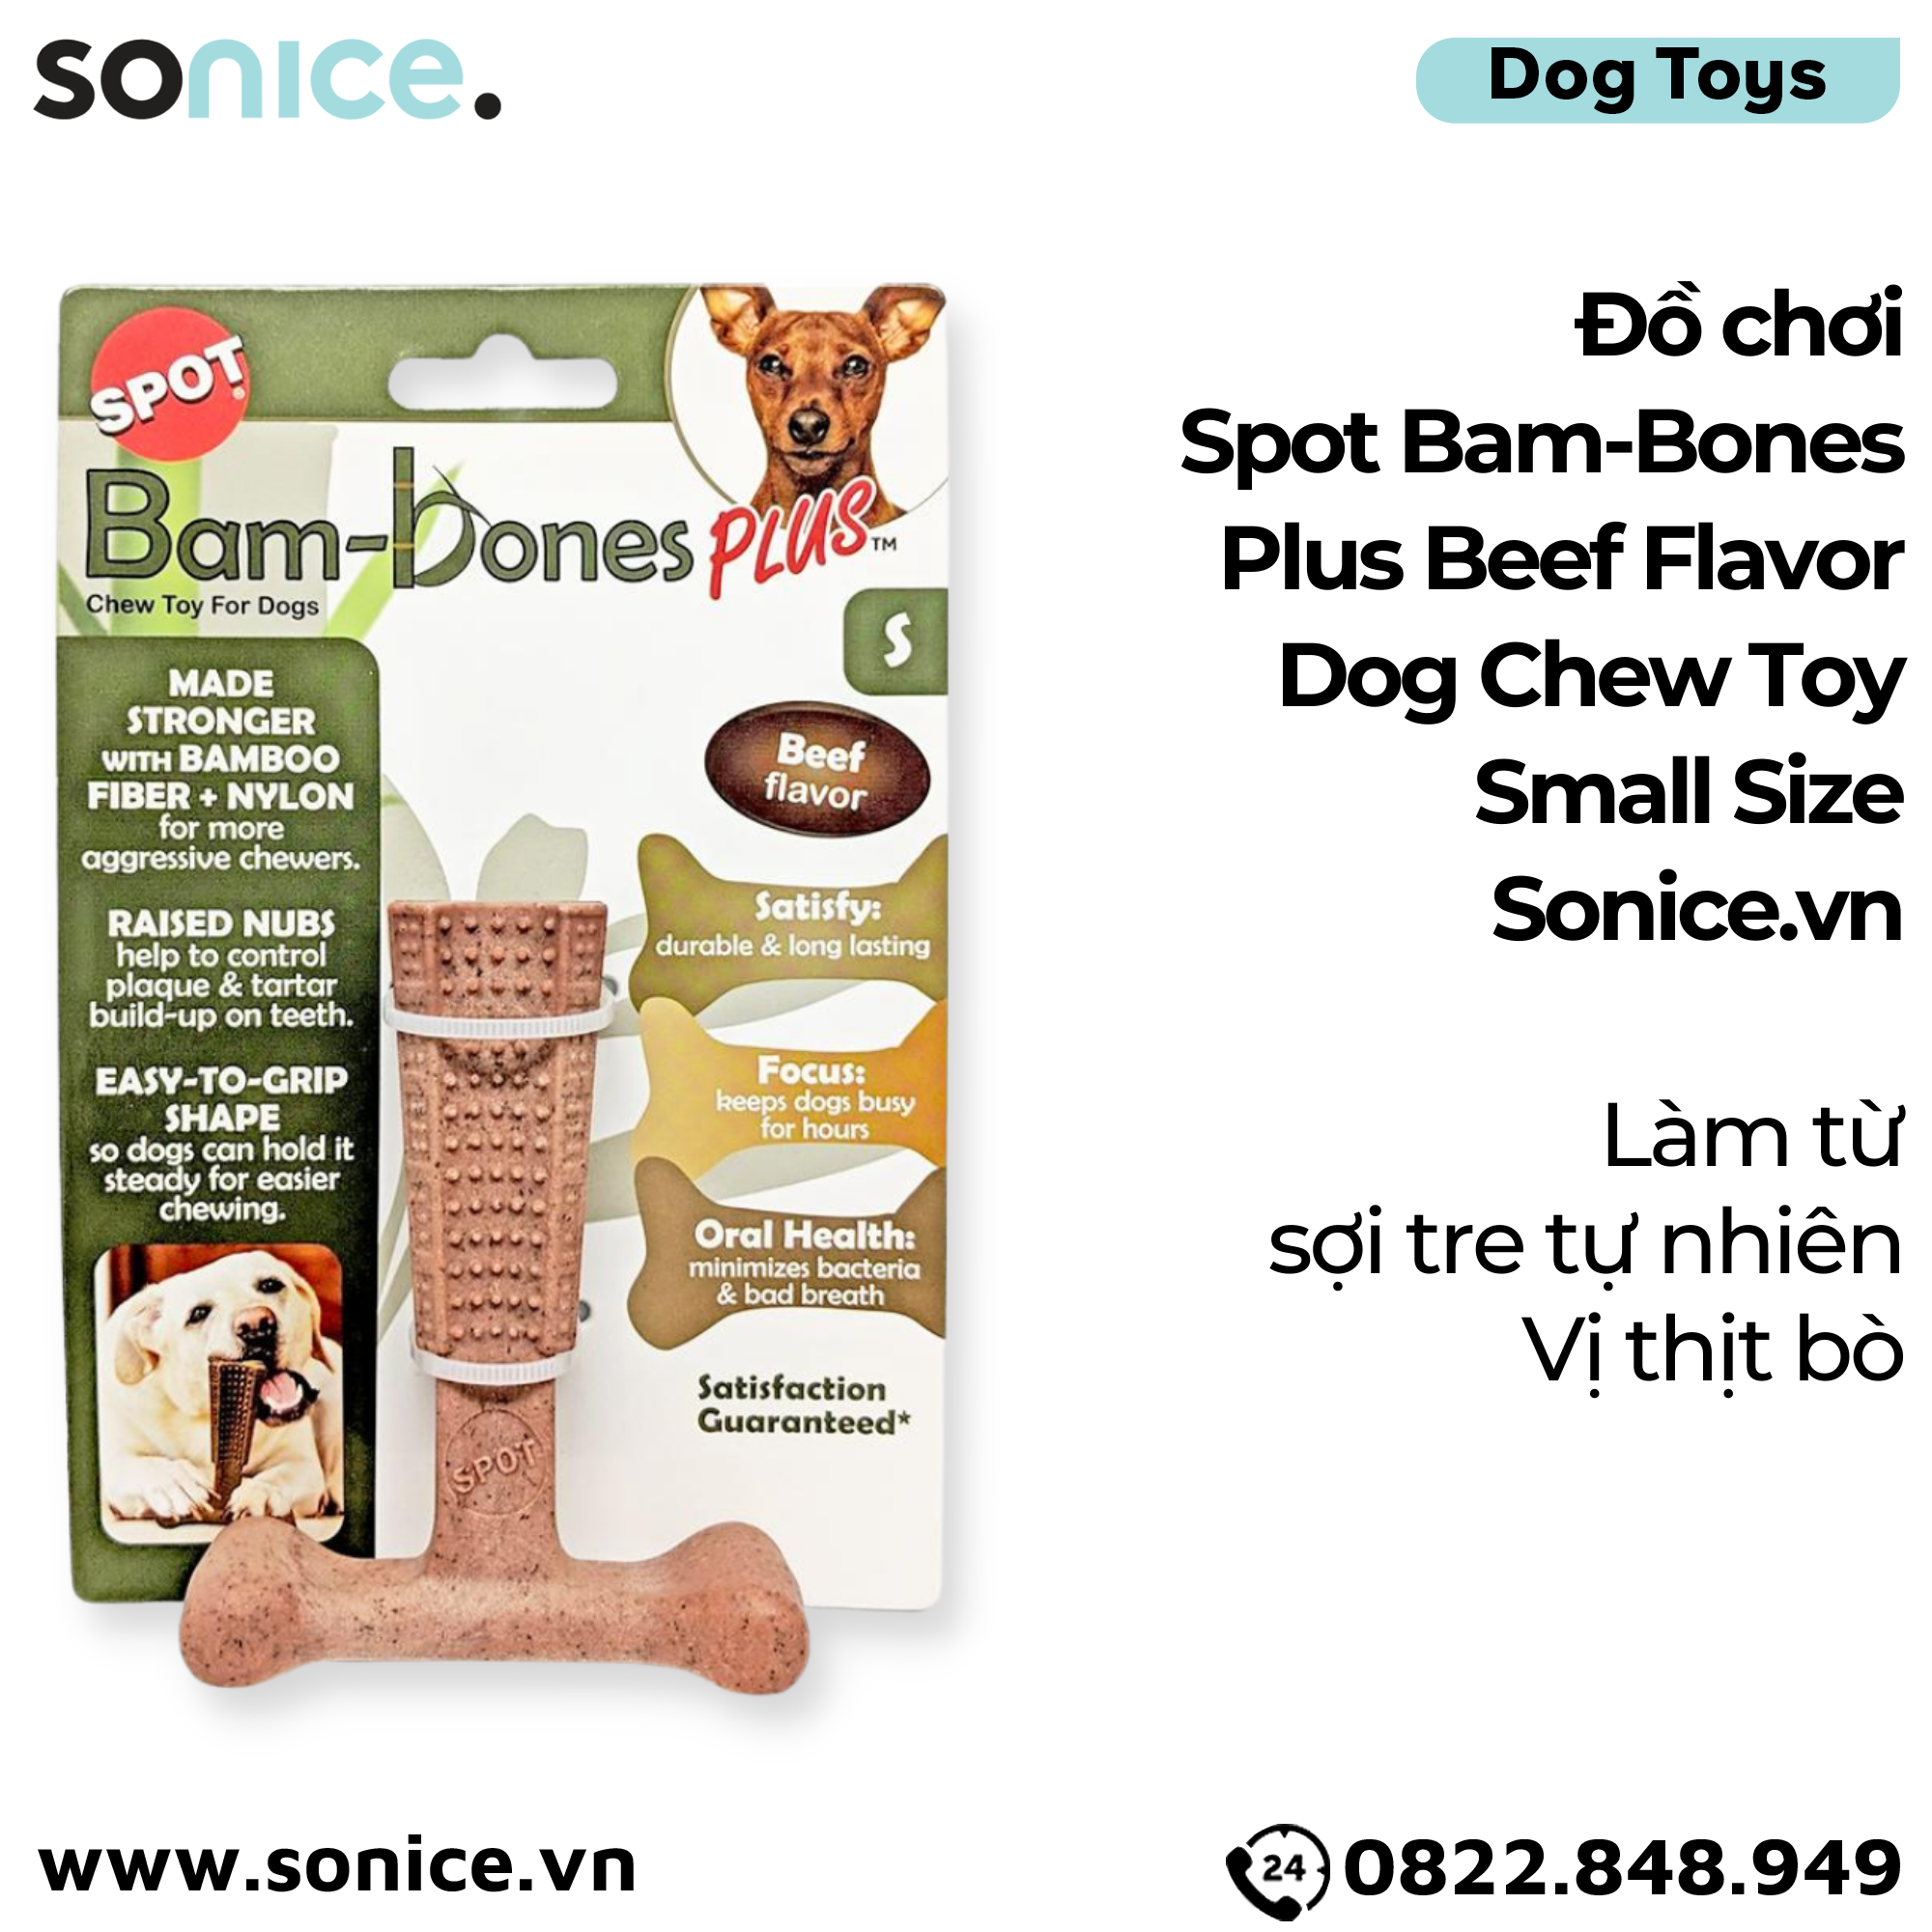  Đồ chơi Spot Bam-Bones Plus Beef Flavor Dog Chew Toy Small Size - Làm từ sợi tre tự nhiên, vị thịt bò SONICE. 